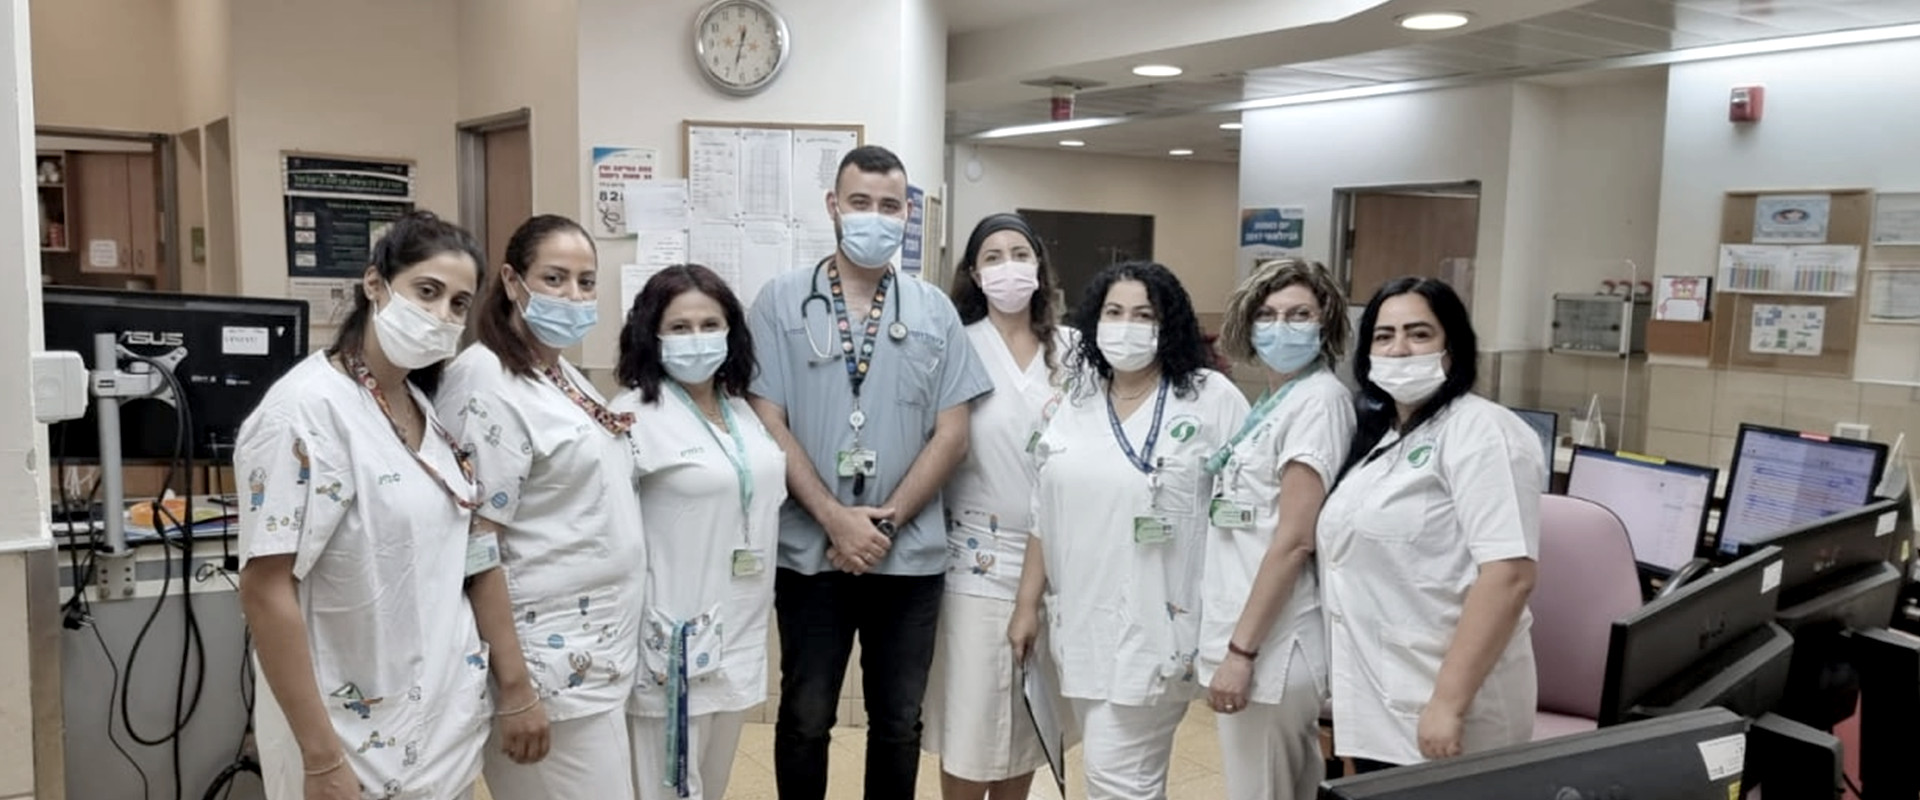 הצוות הרפואי בבית החולים סורוקה (צילום: n12)